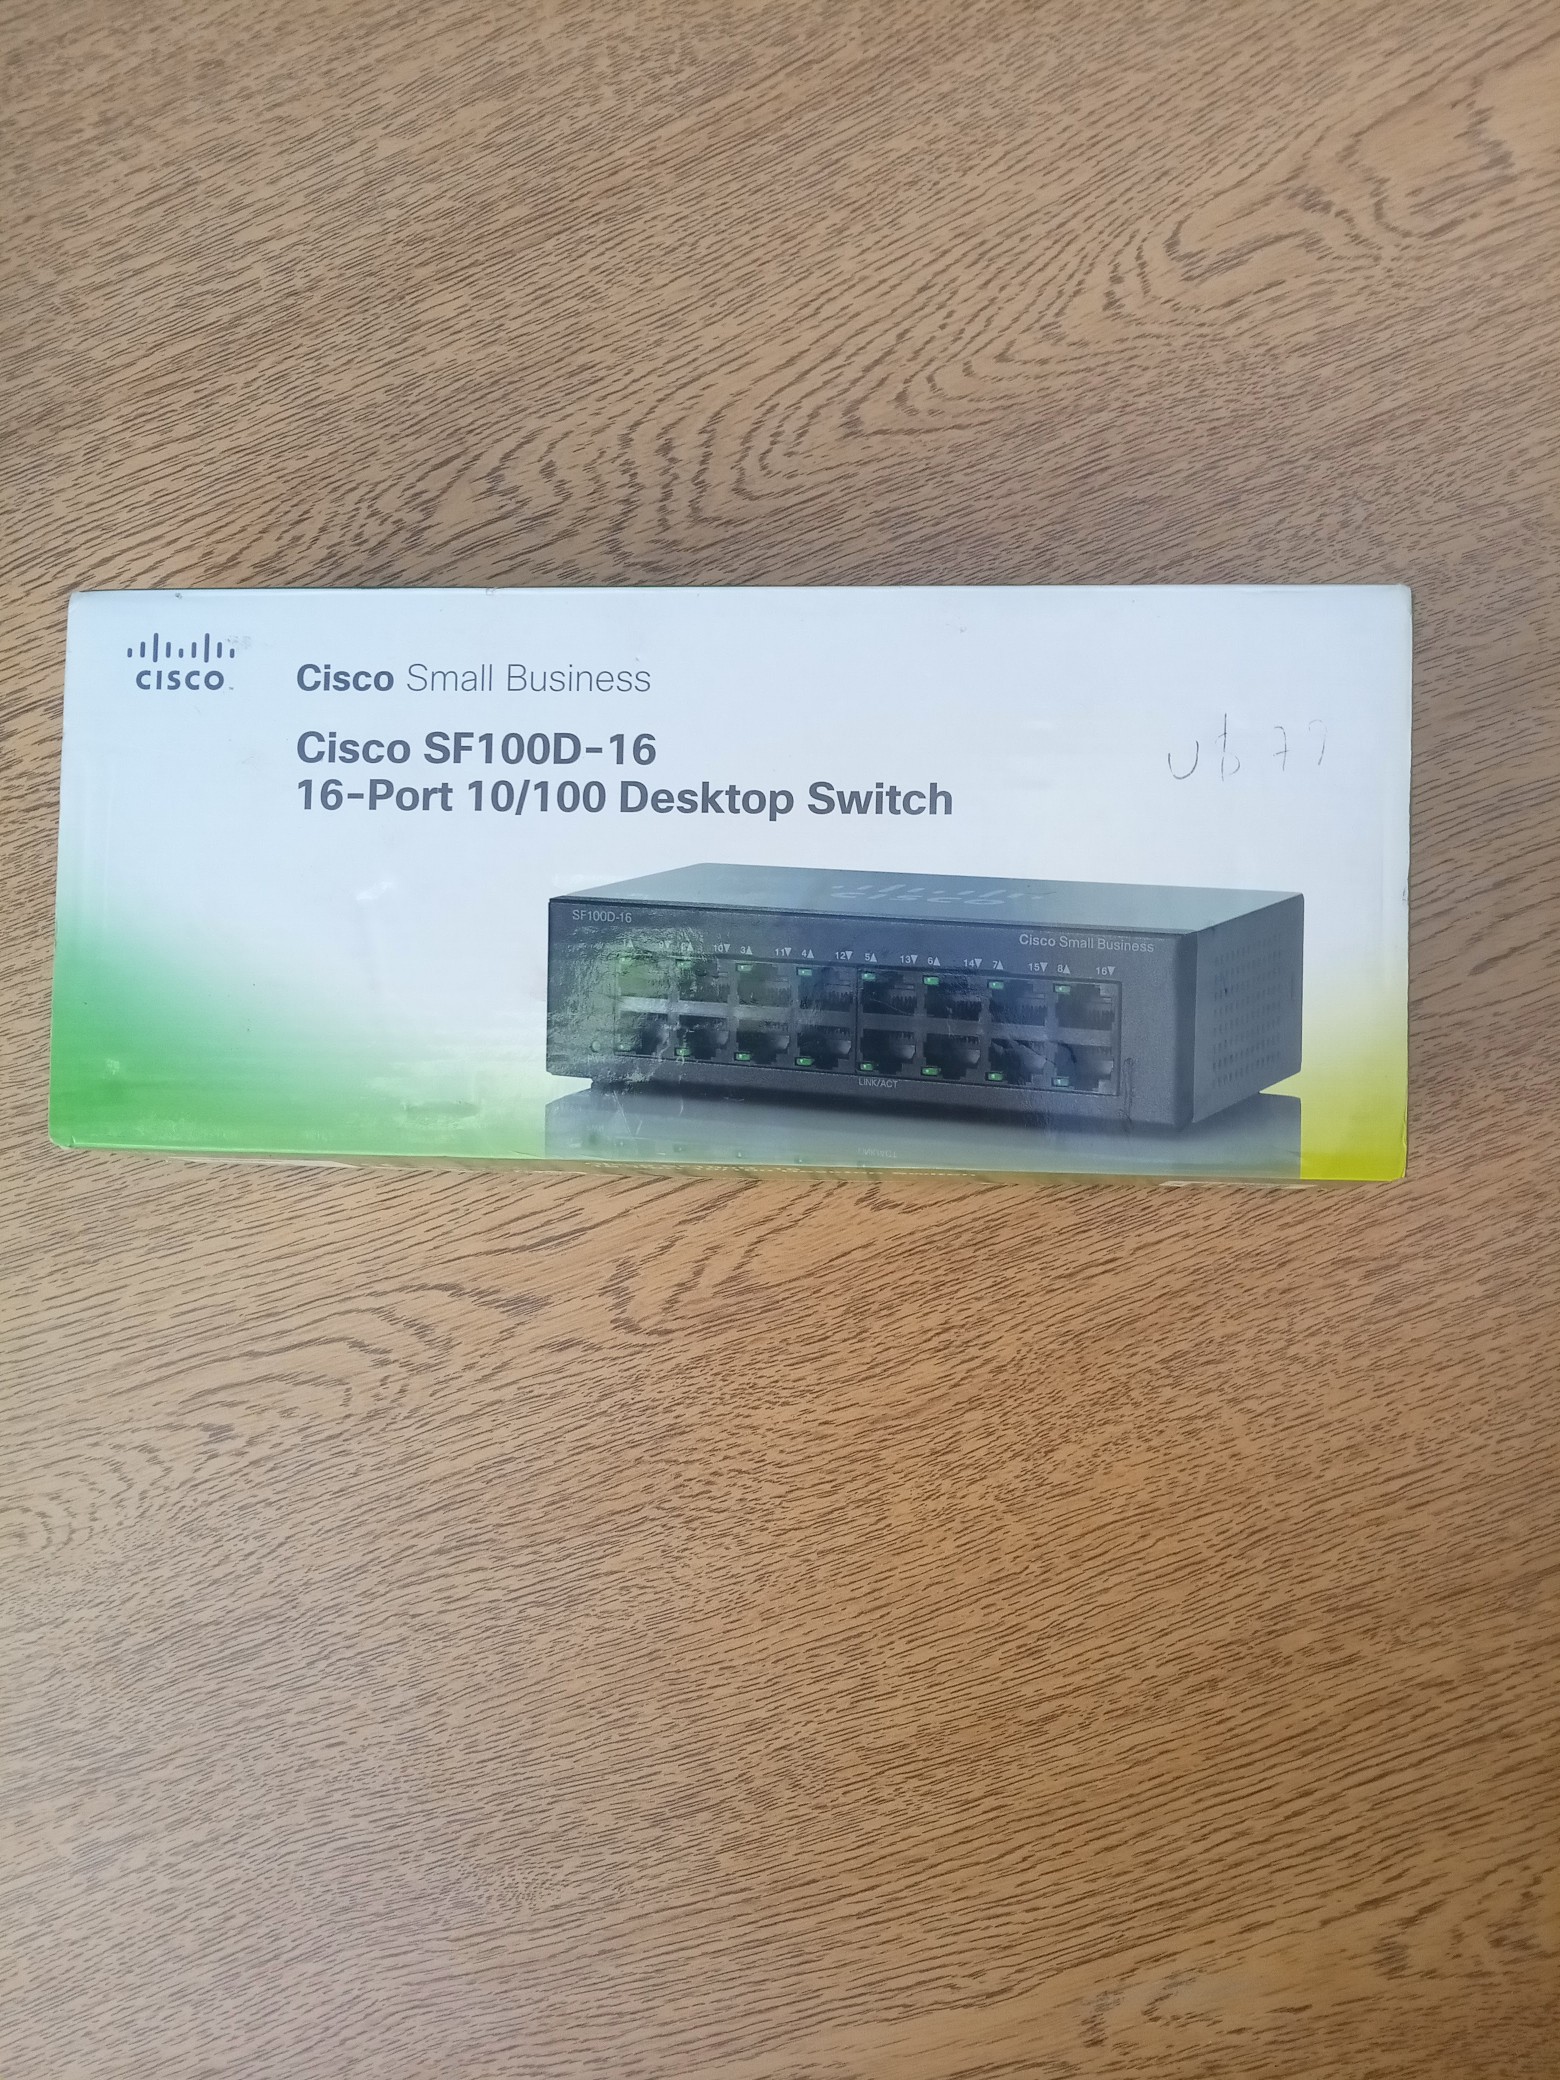 accesorios para electronica - Comunicador De Escritorio Cisco SF100D-16 De 16 puertos 10 )100 0